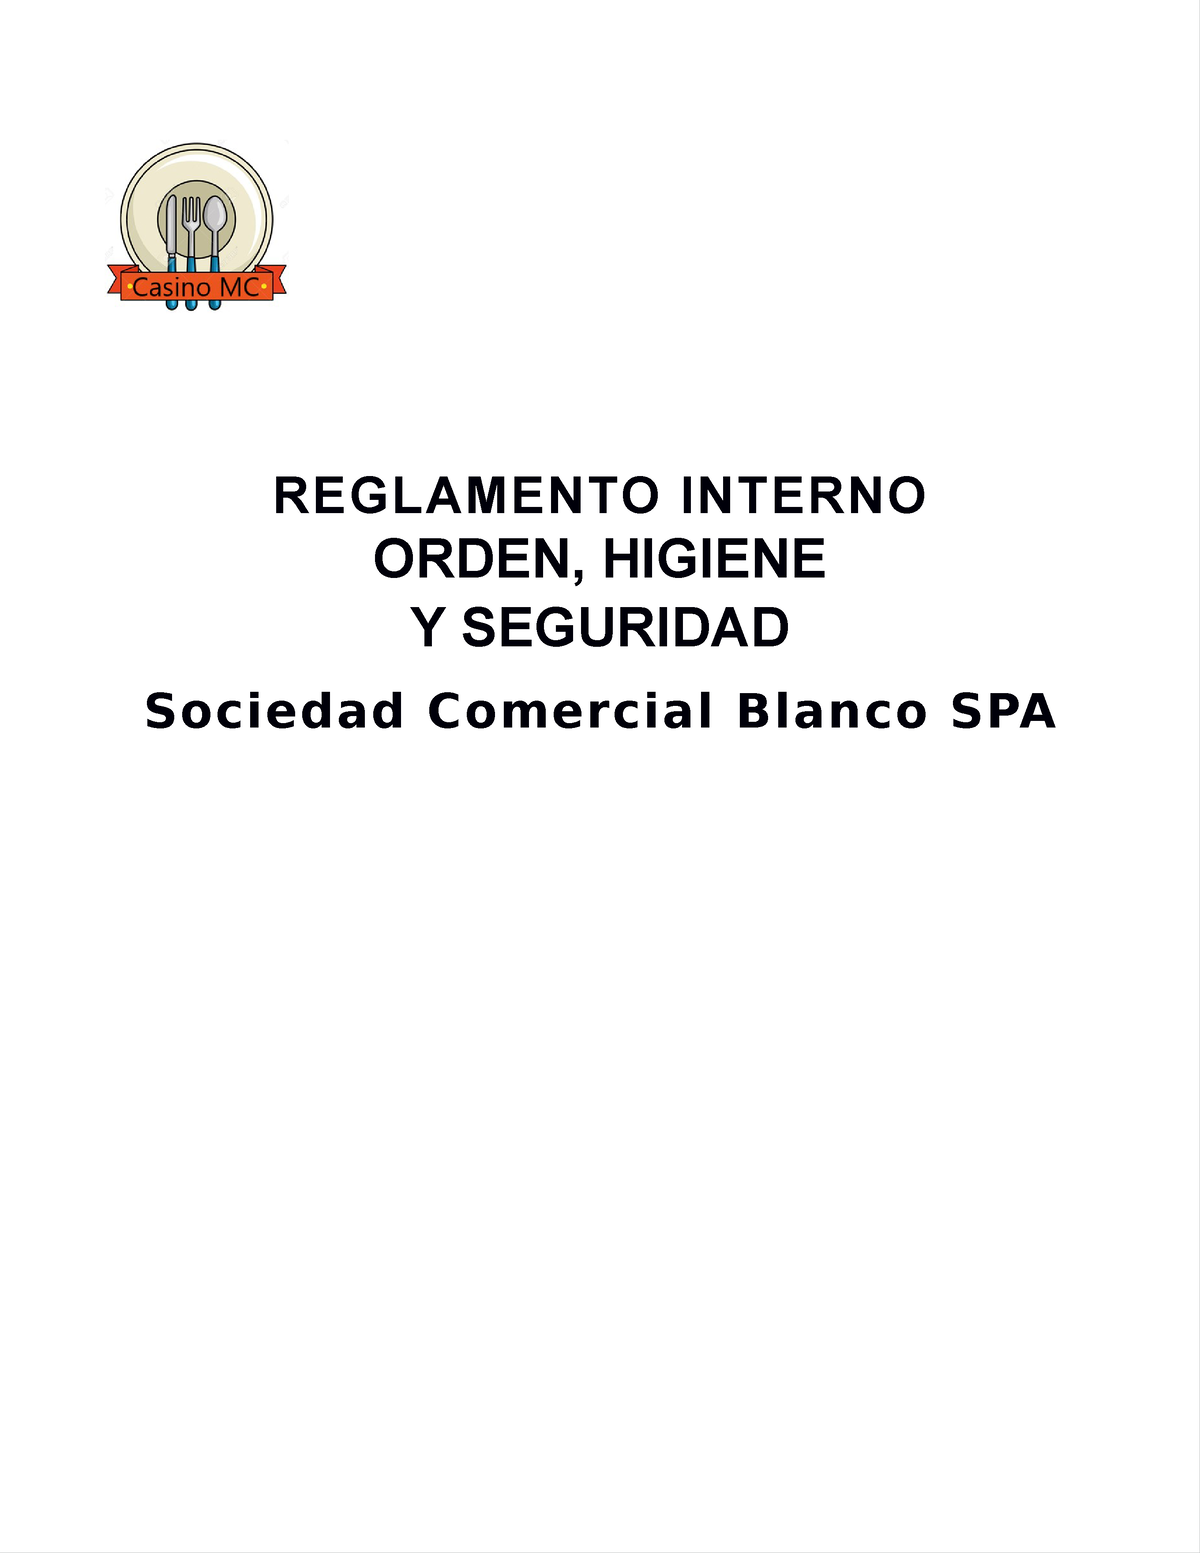 Reglamento De Orden Higiene Y Seguridad Reglamento Interno Orden Higiene Y Seguridad Sociedad 3640